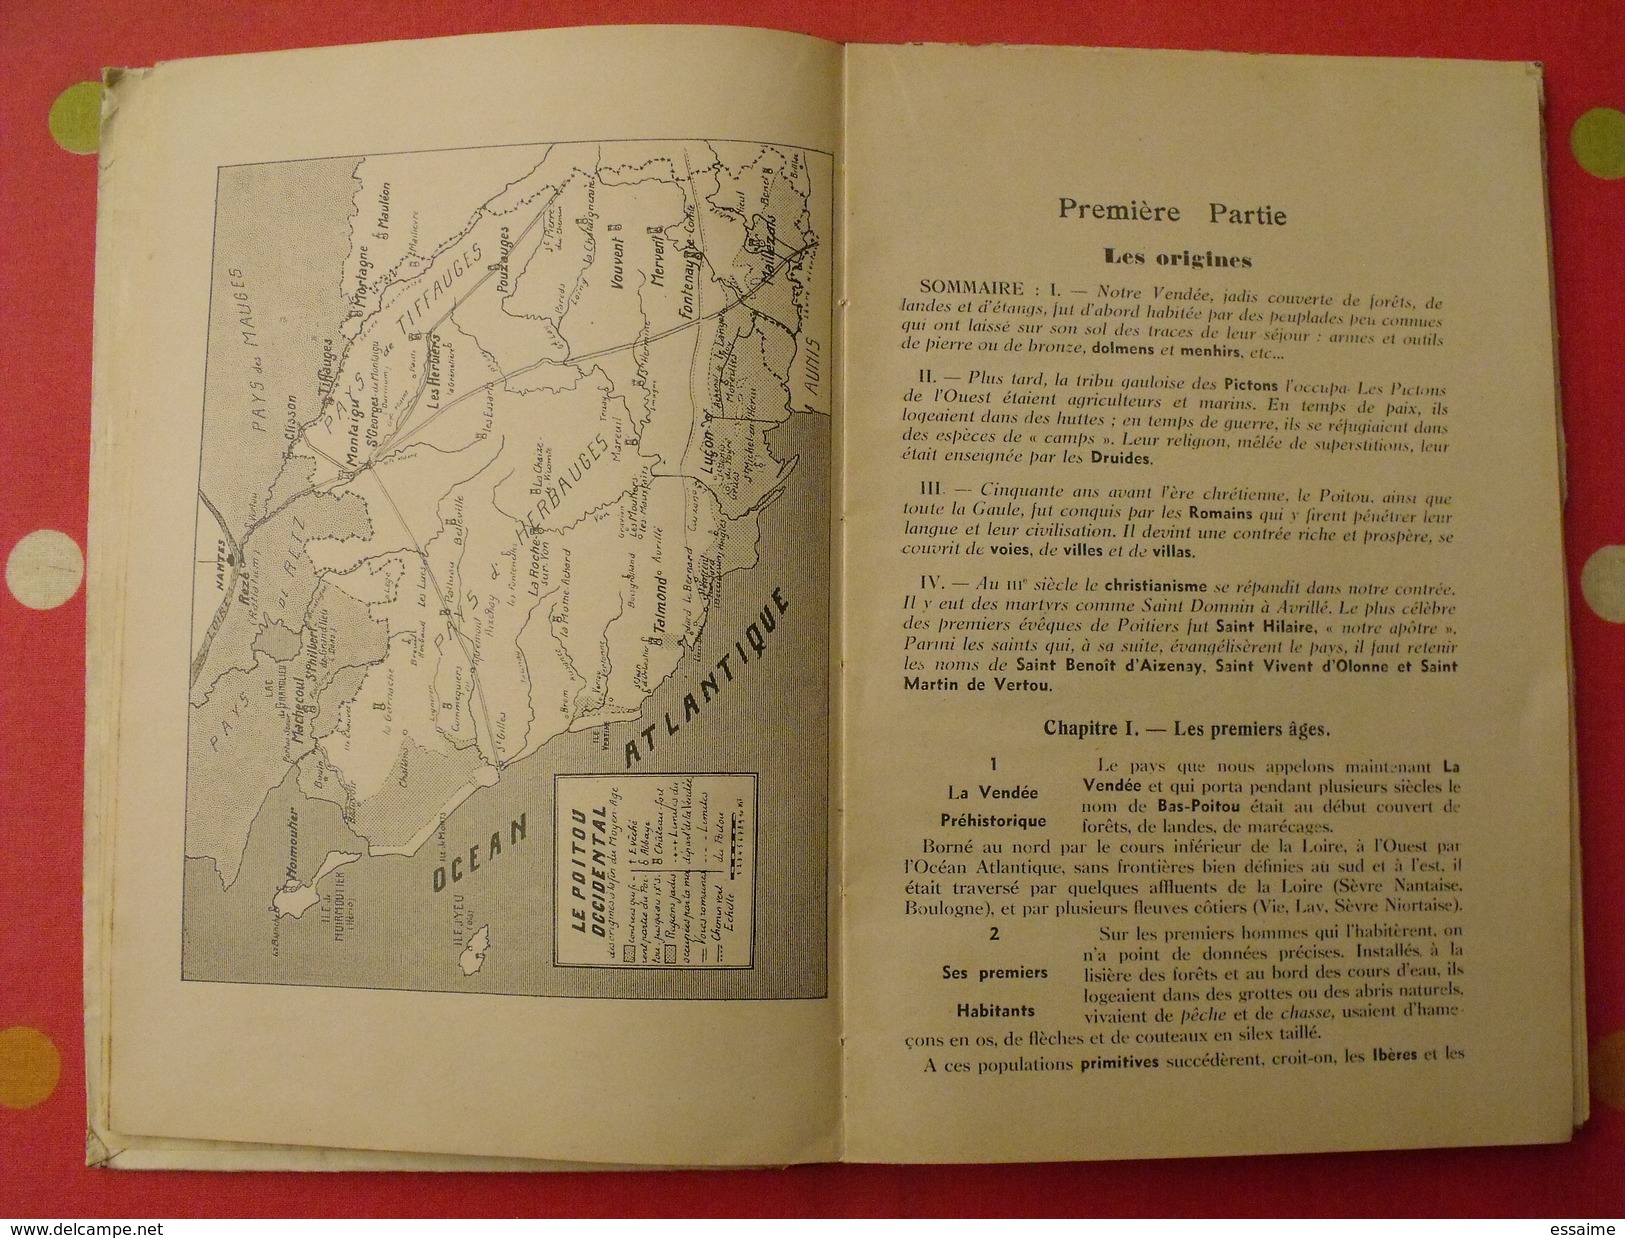 Notre Vendée. André Poirier. 1934. Fontenay Le Comte. Carte Dépliable - Poitou-Charentes